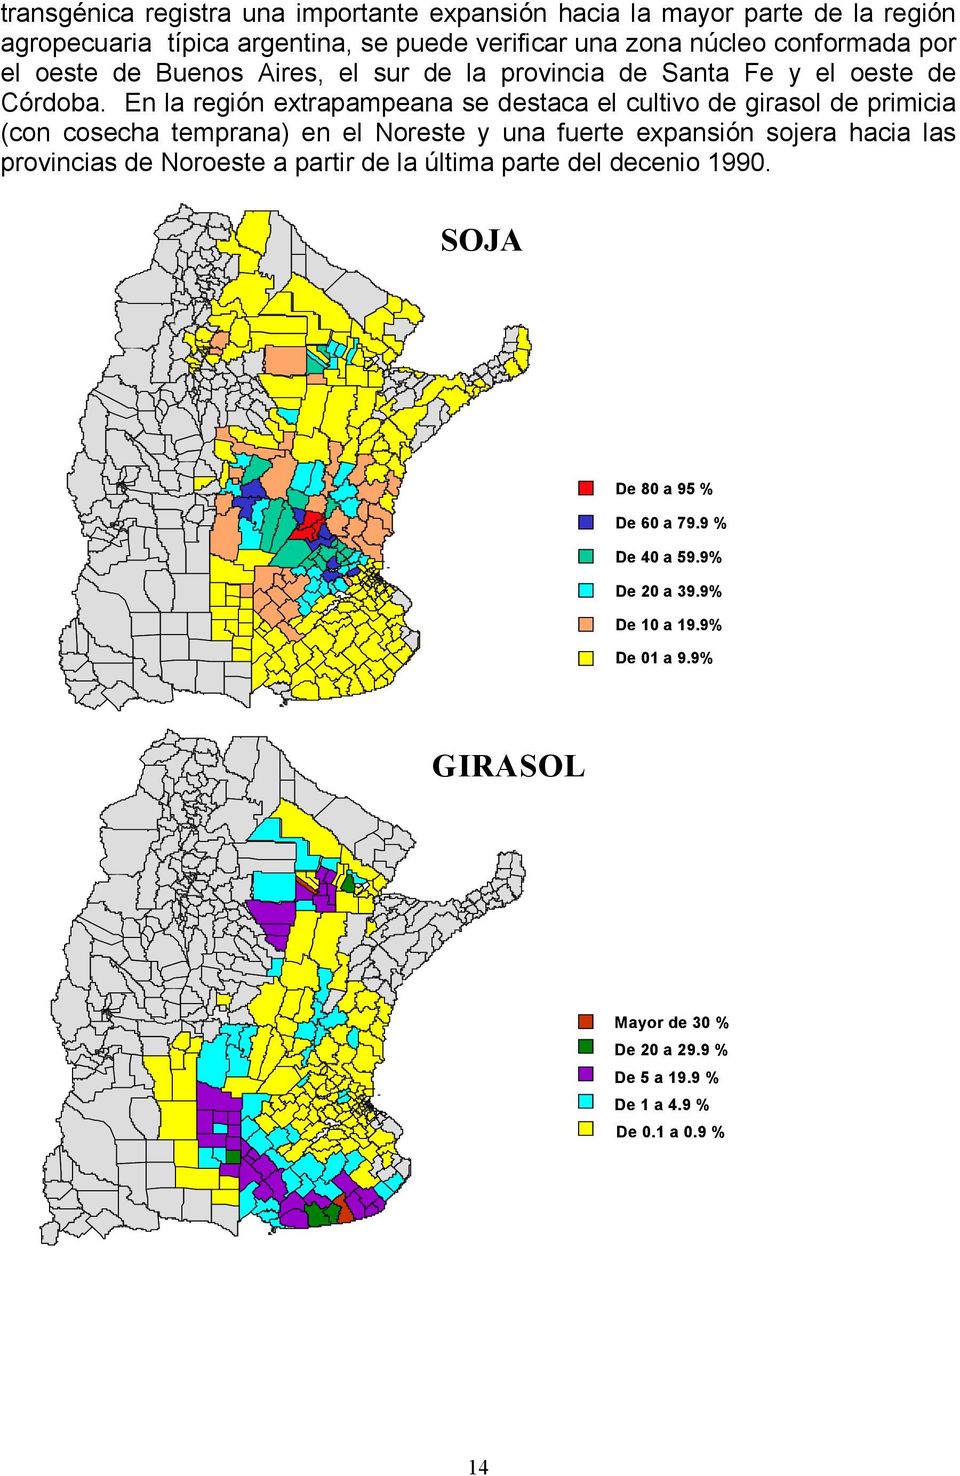 En la región extrapampeana se destaca el cultivo de girasol de primicia (con cosecha temprana) en el Noreste y una fuerte expansión sojera hacia las